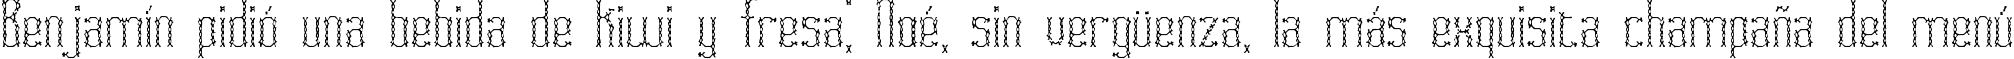 Пример написания шрифтом Fascii Cross BRK текста на испанском